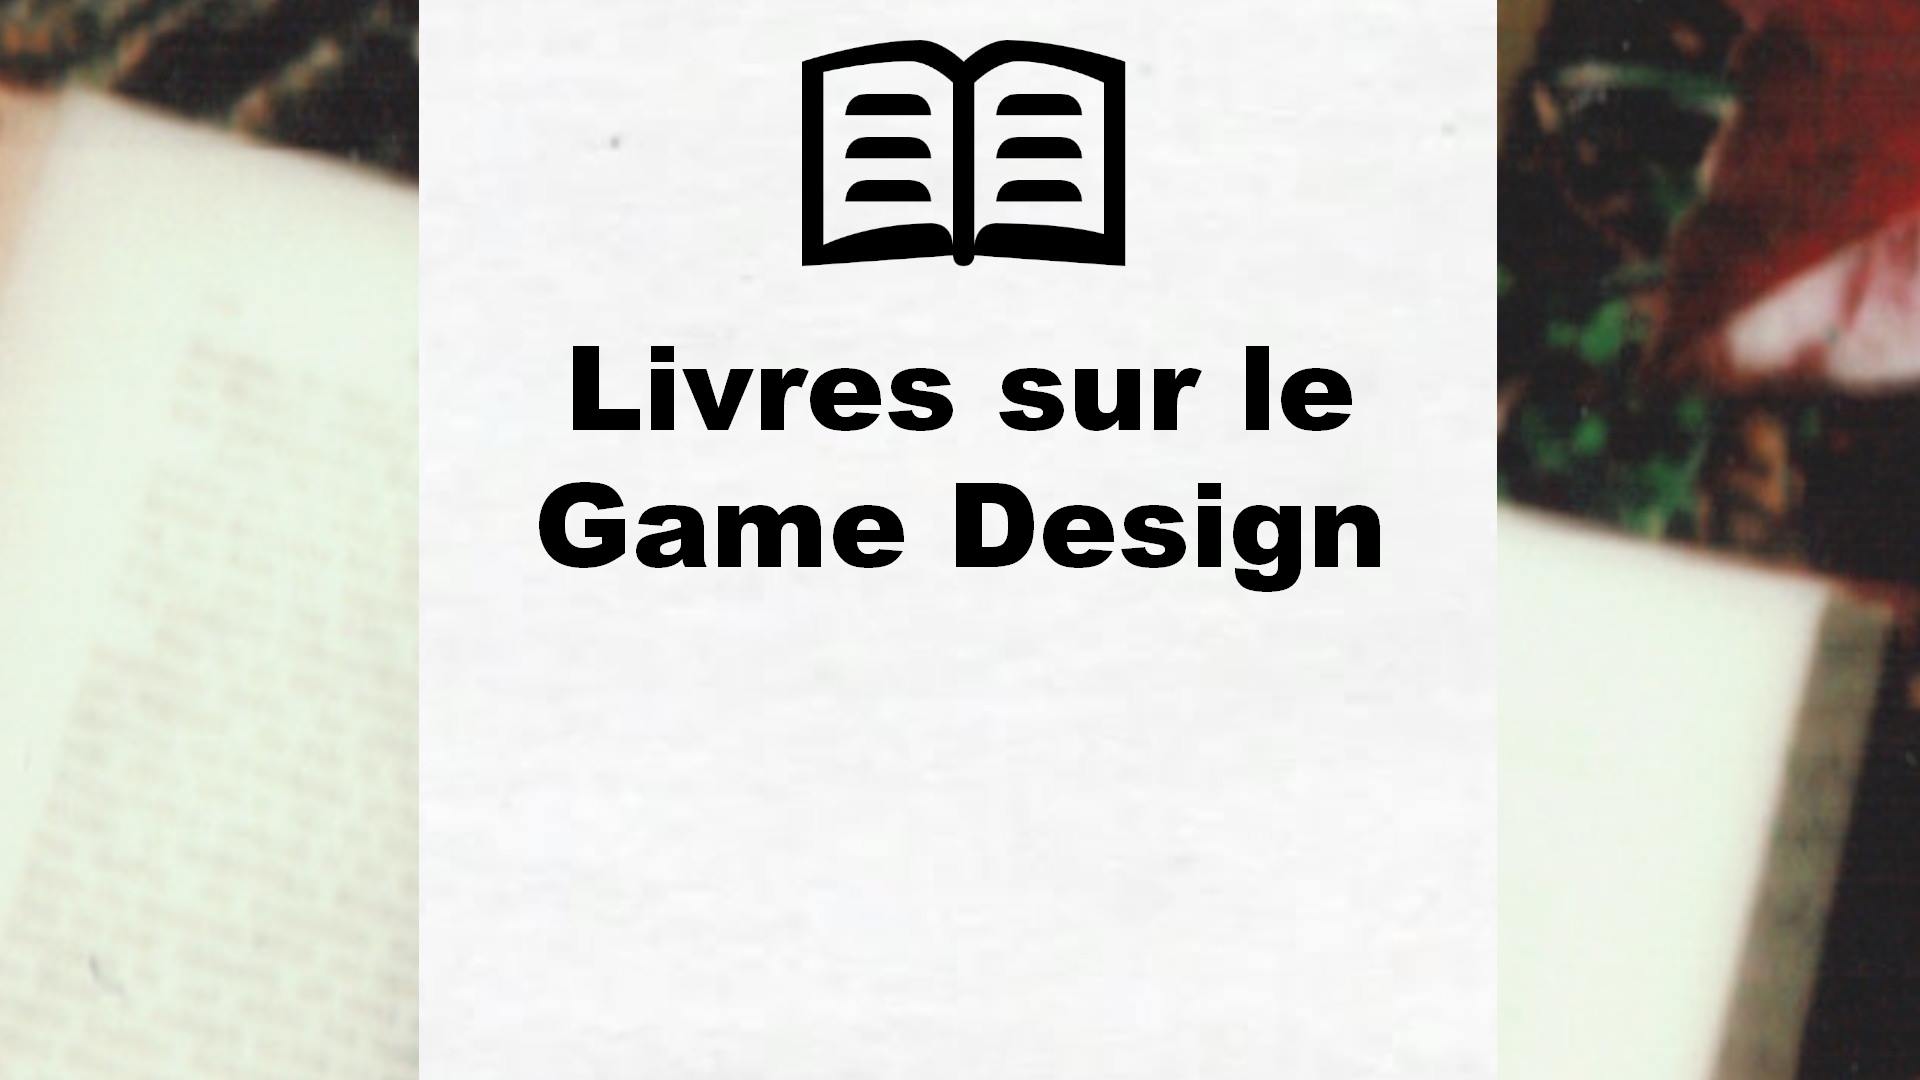 Livres sur le Game Design